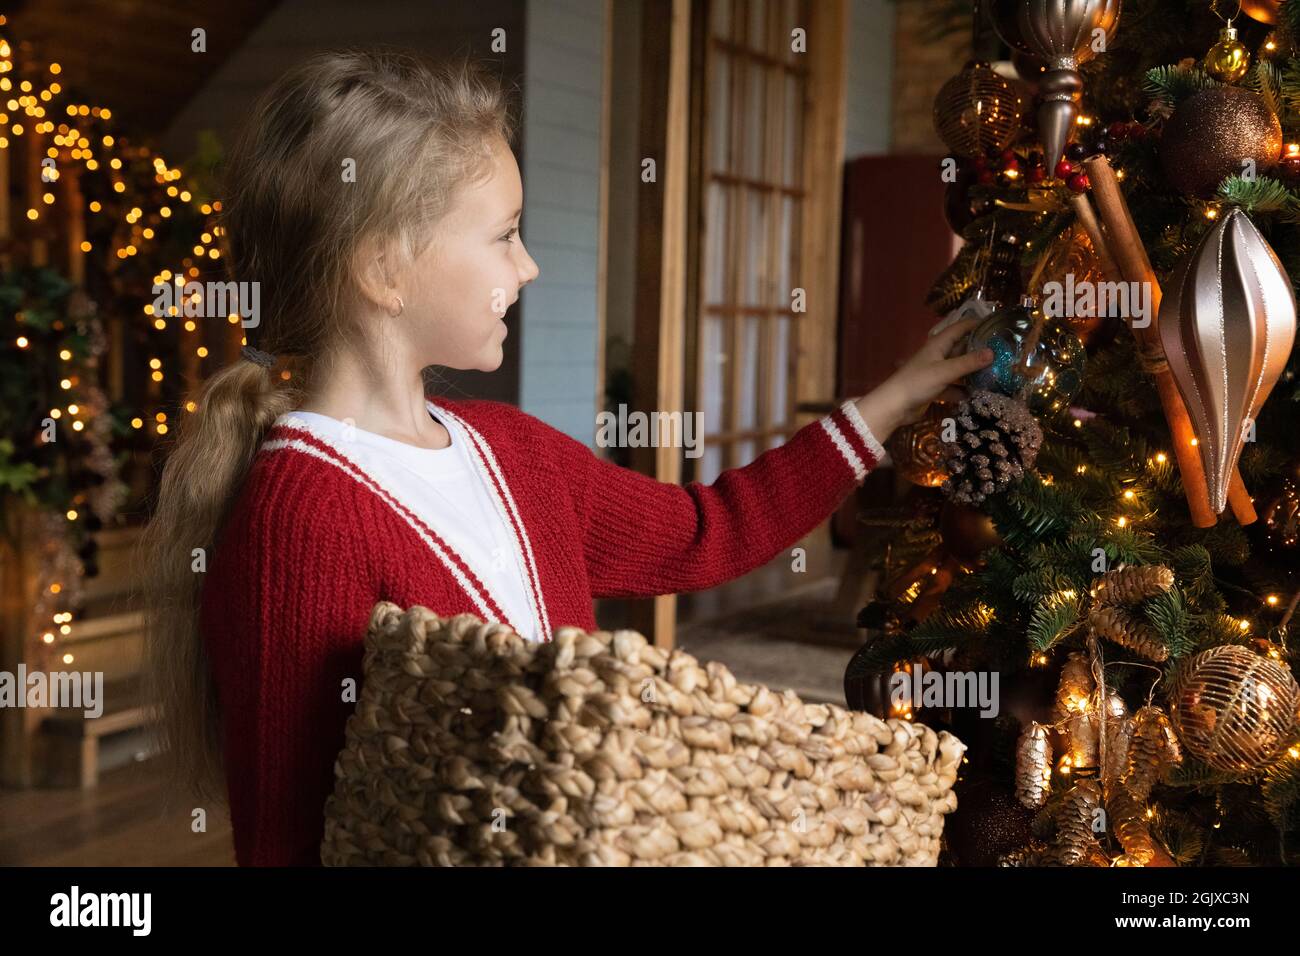 Gioioso carino ragazza carino che tiene il cestino, che decorano l'albero con i baubles. Foto Stock